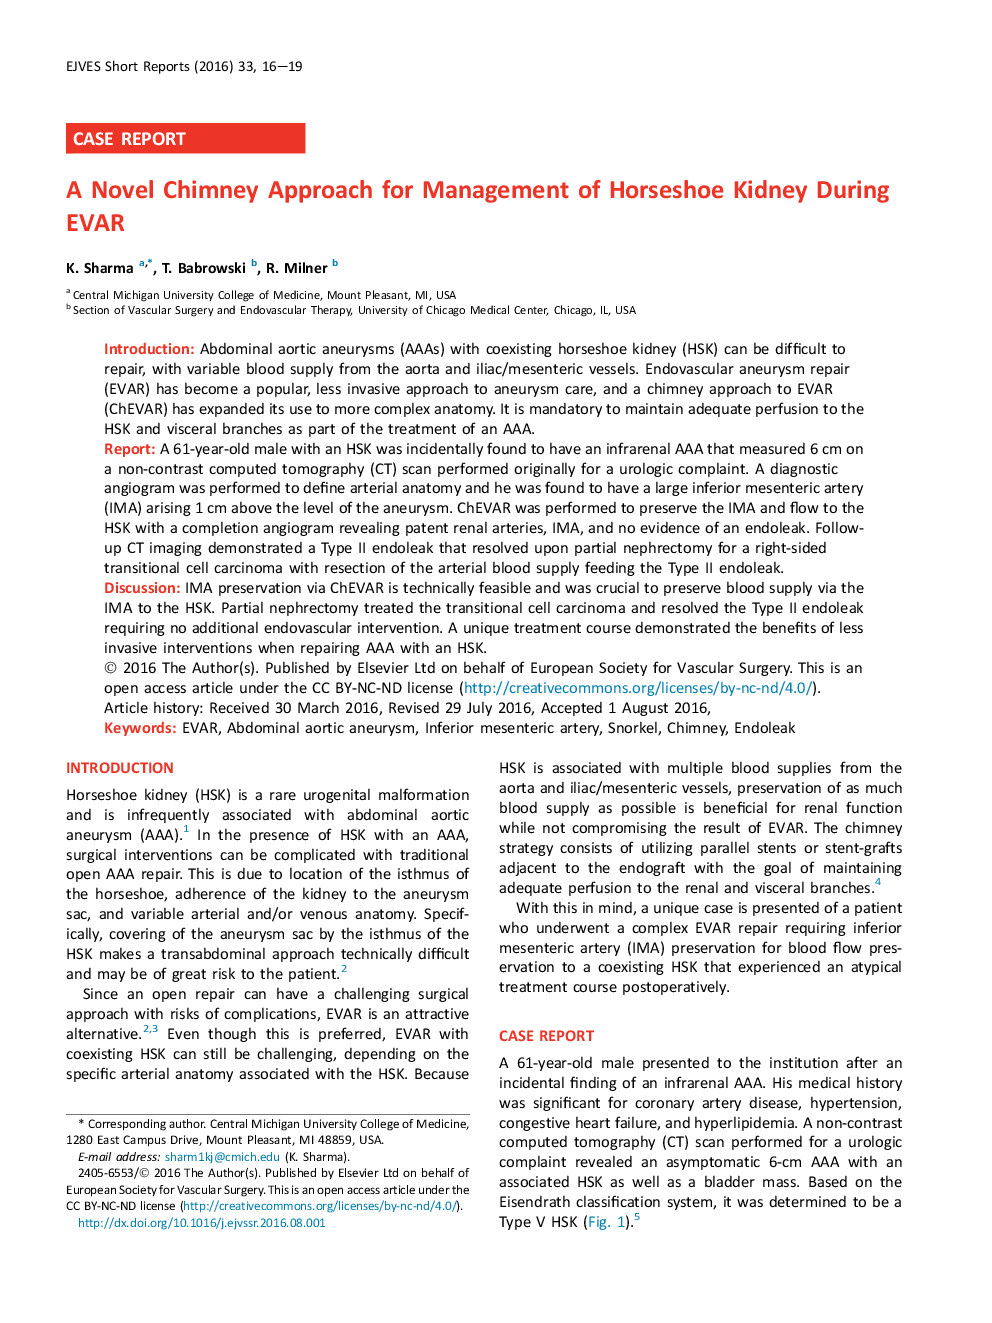 A Novel Chimney Approach for Management of Horseshoe Kidney During EVAR